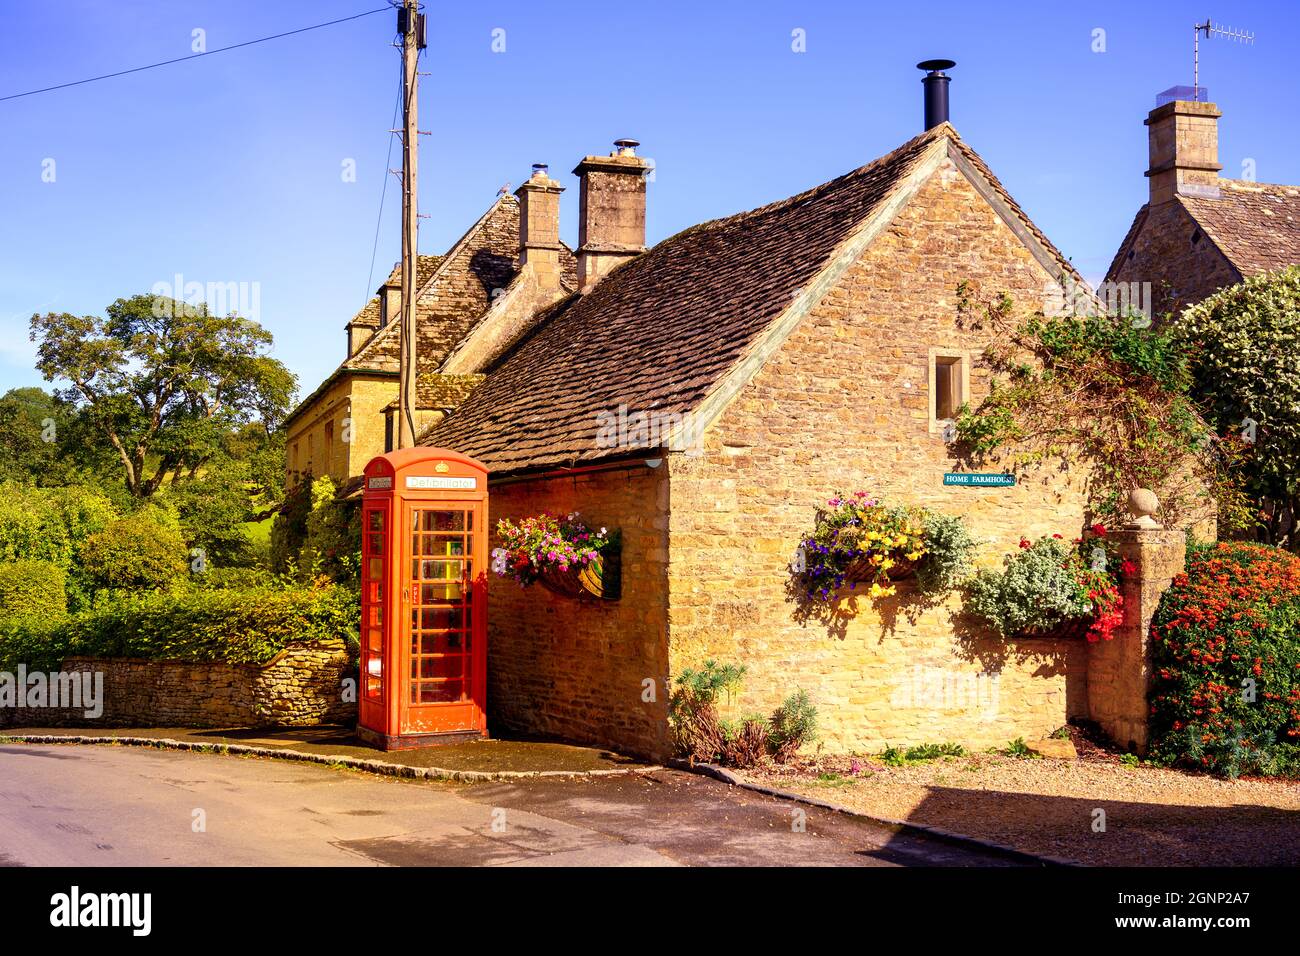 Téléphone traditionnel rouge à l'extérieur d'un cottage en pierre de Cotswold maintenant utilisé comme station de stockage de défibrillateur. Upper Slaughter Gloucestershire Angleterre Royaume-Uni Banque D'Images